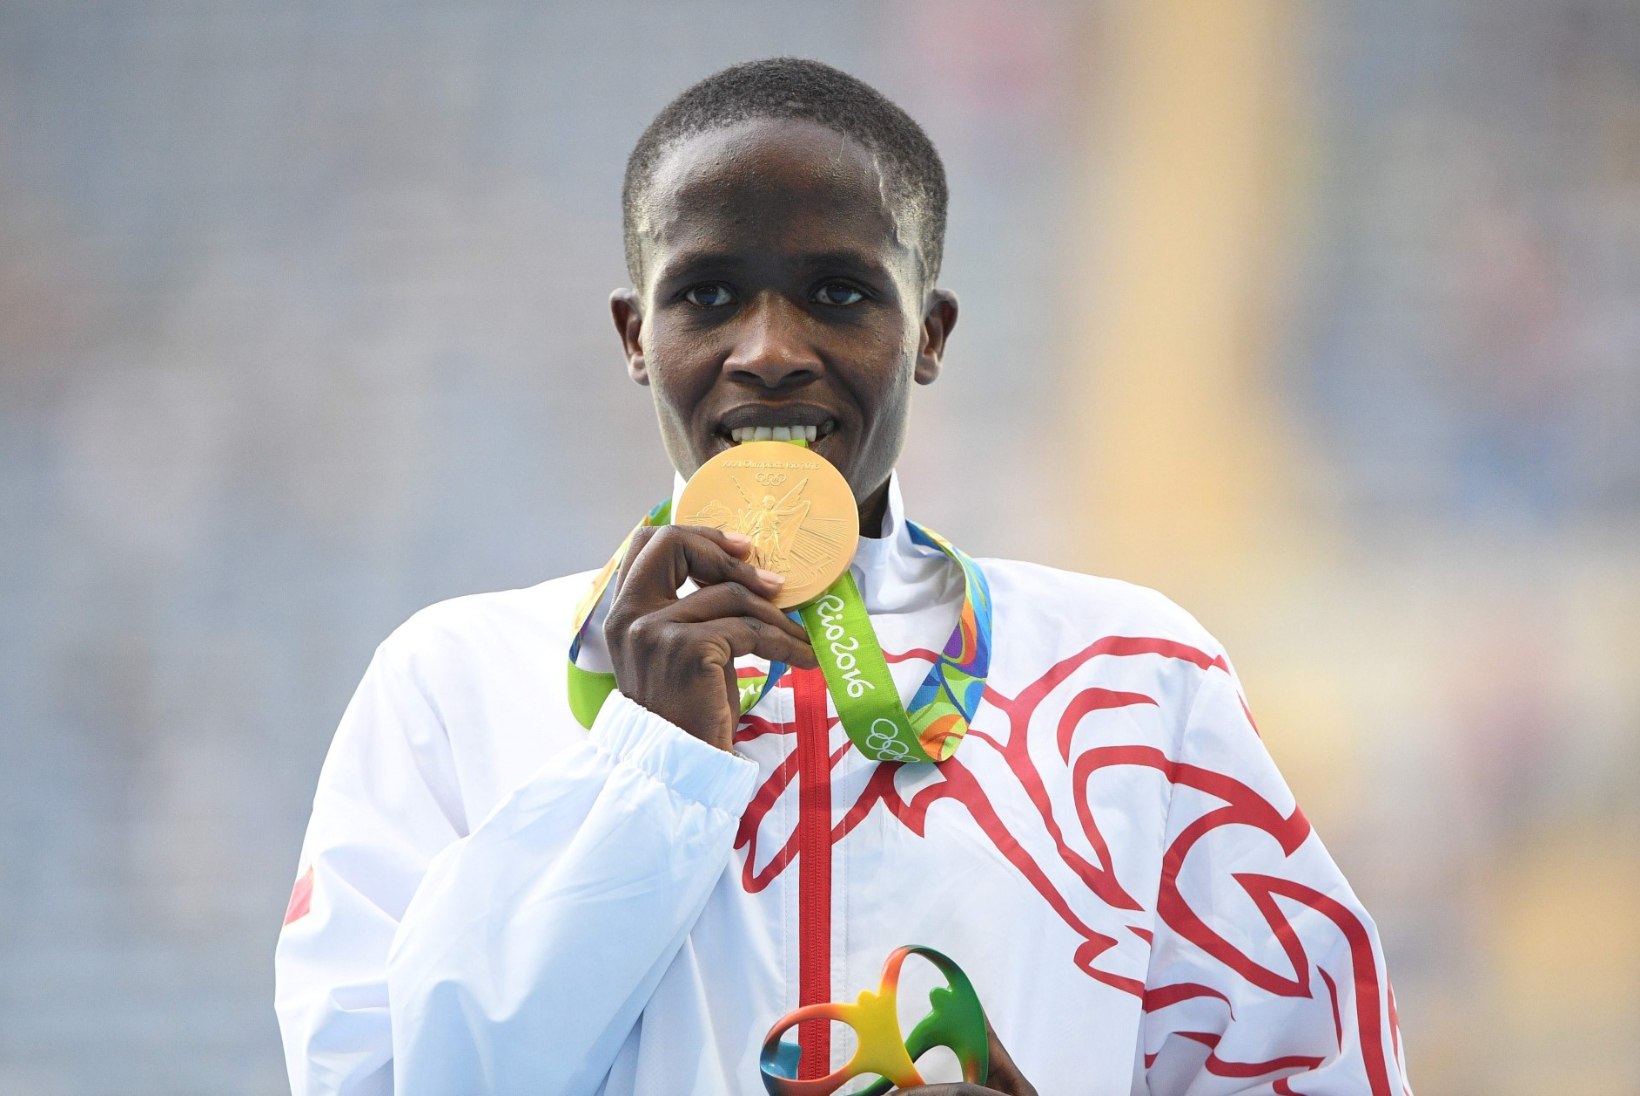 Briti ajaleht: teismelisena maailmarekordi püstitanud jooksustaar põrus dopinguga